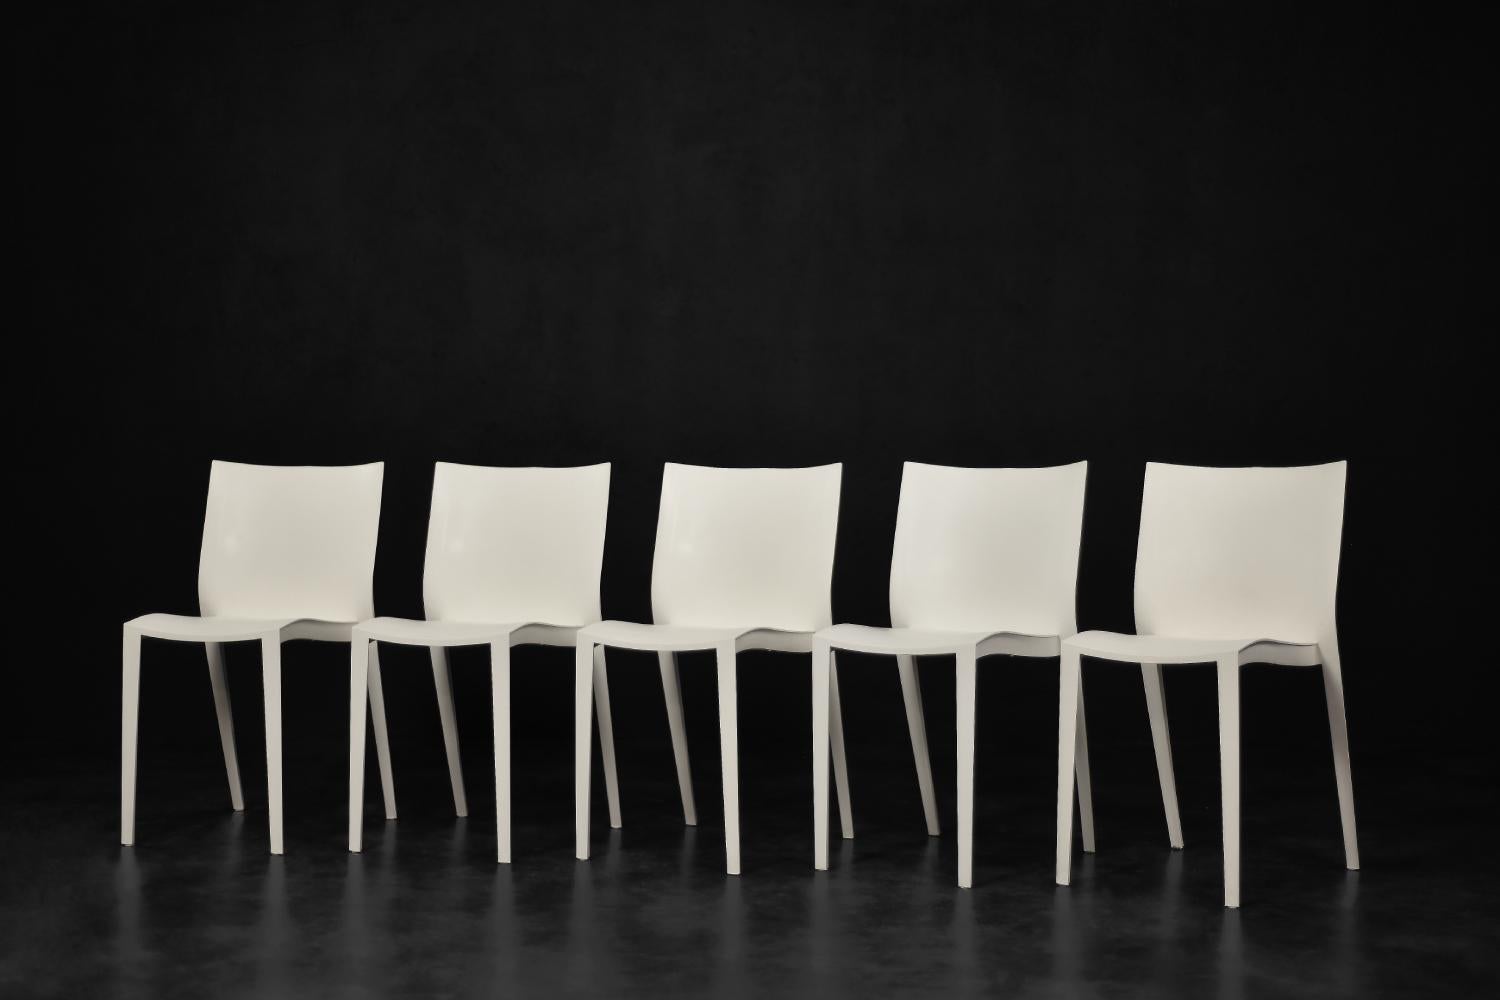 Cet ensemble de cinq chaises Slick Slick a été conçu par Philippe Starck en 1999 pour le fabricant français XO Design. Slick Slick est l'essence même d'une chaise. Un concentré d'élégance et d'intelligence. Il symbolise la créativité et la vision de